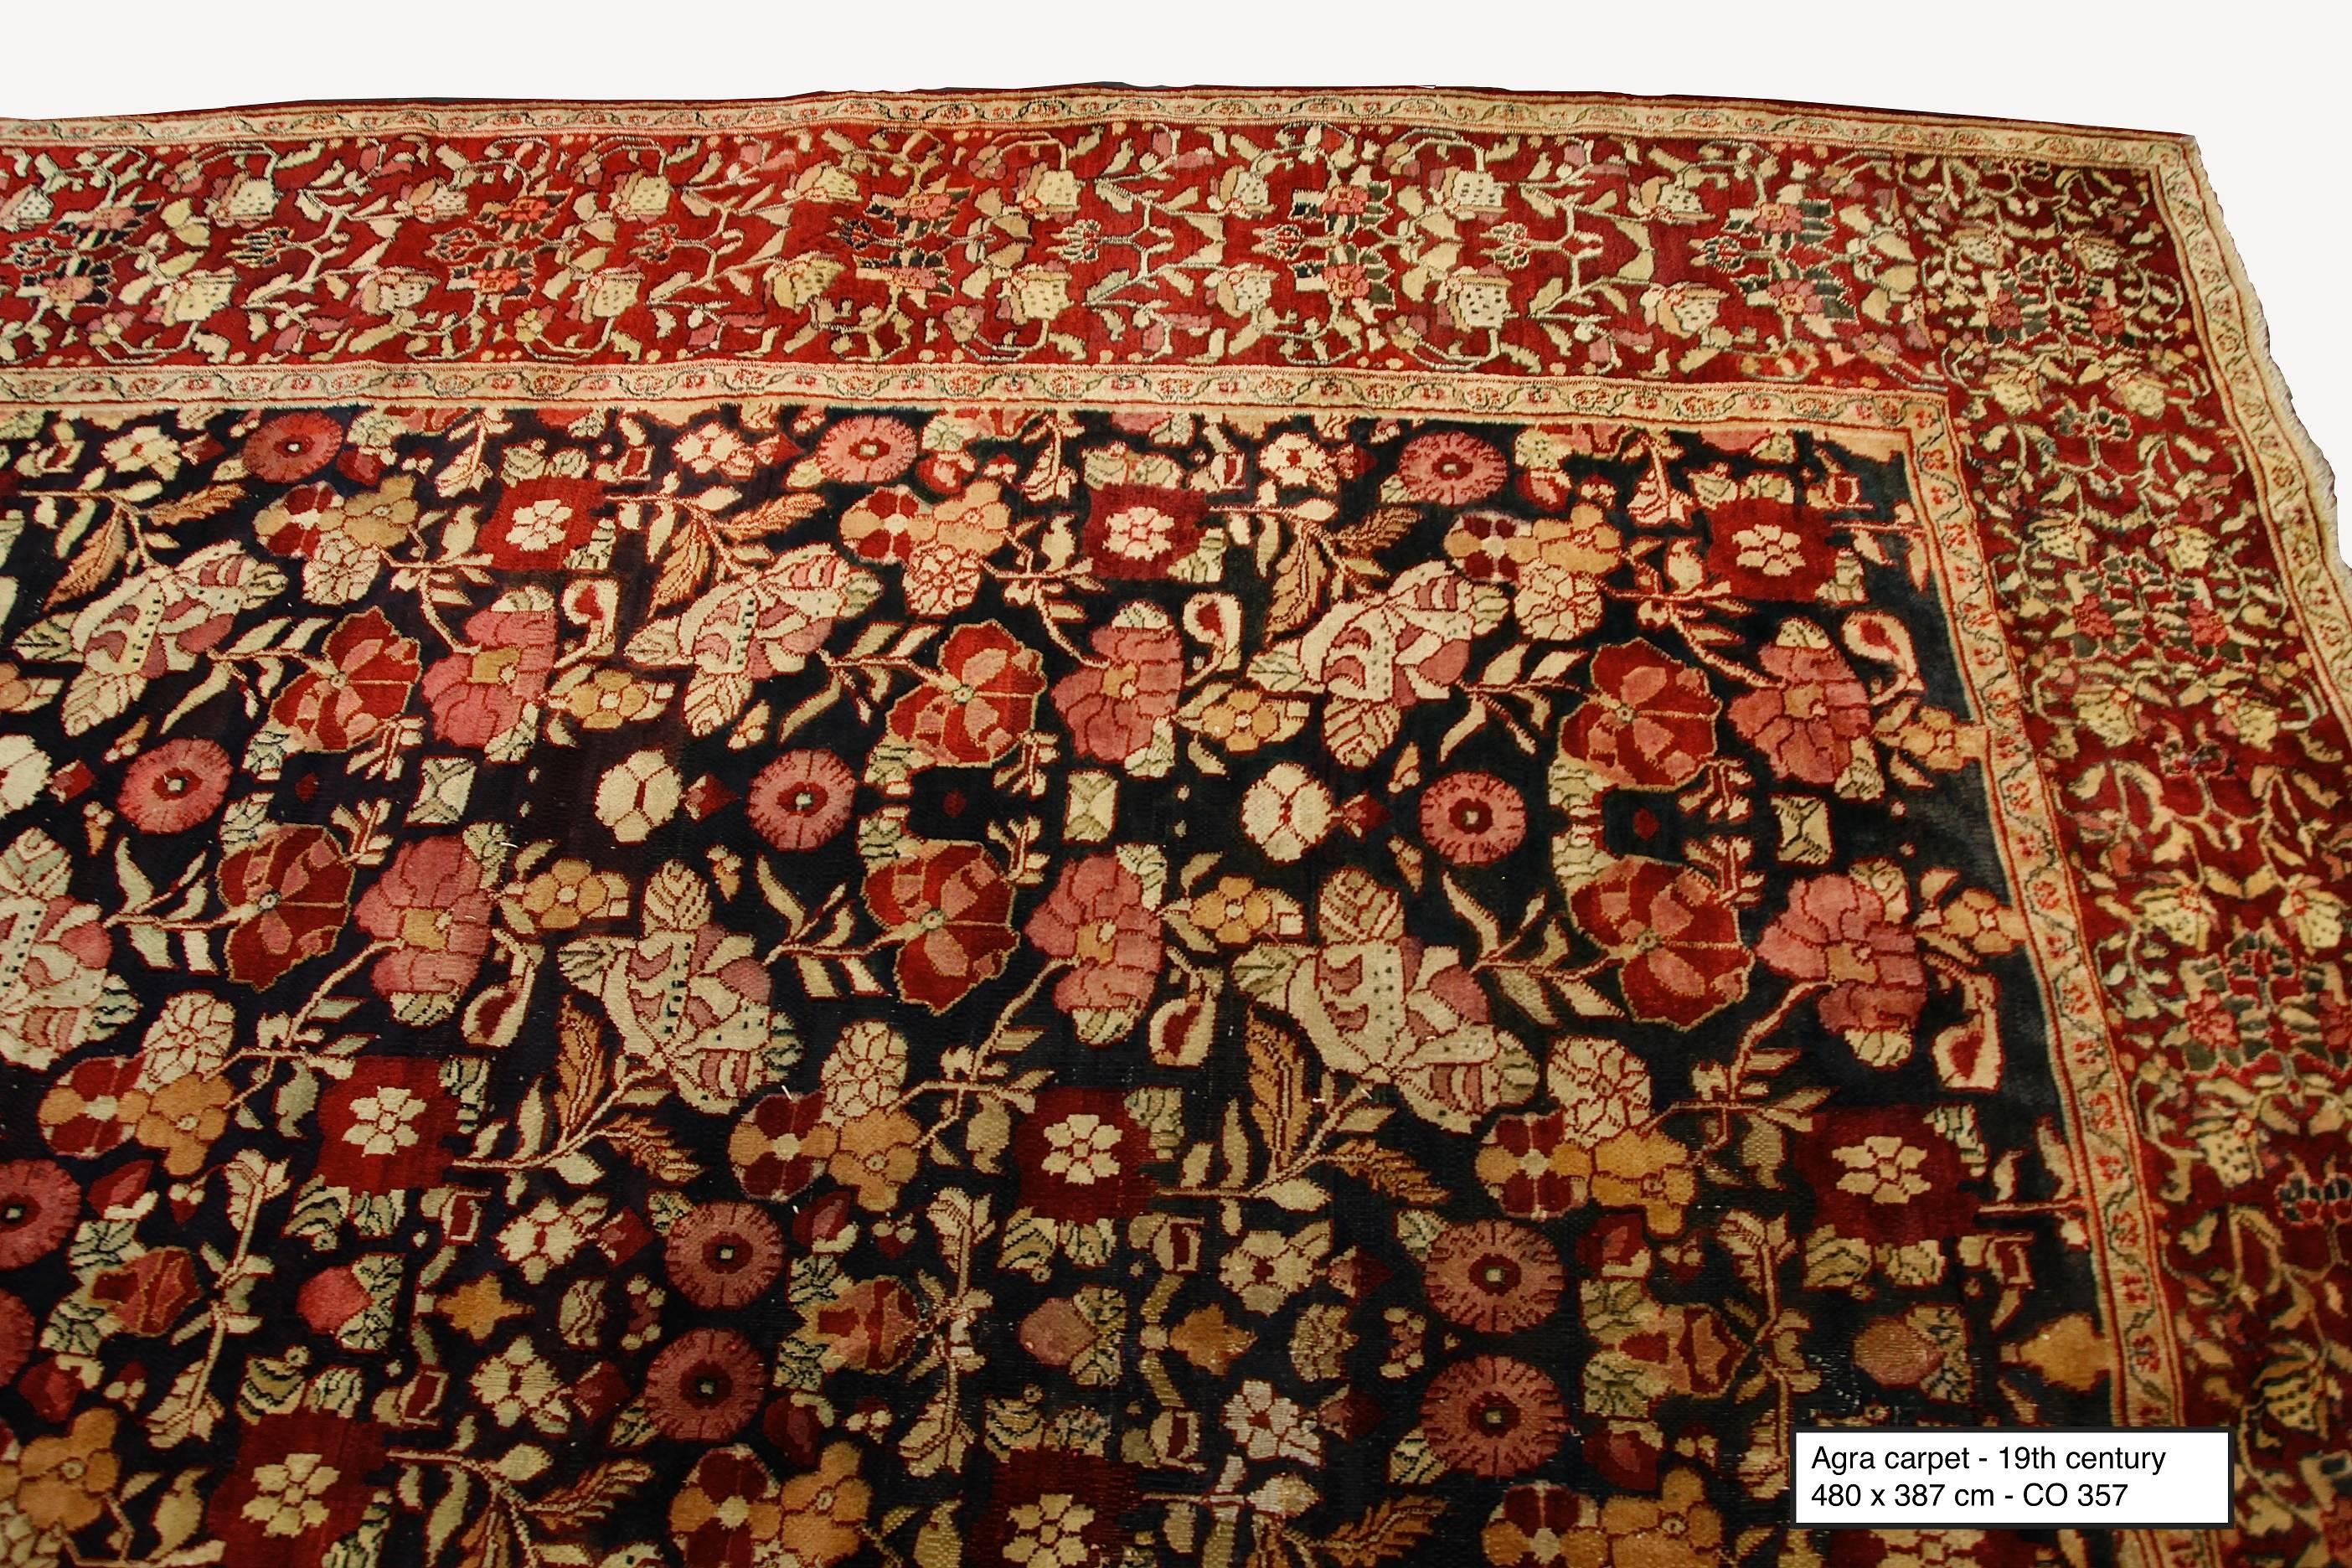 Antique Indian Agra carpet. Measures: 480 x 387 cm, 19th century.
 